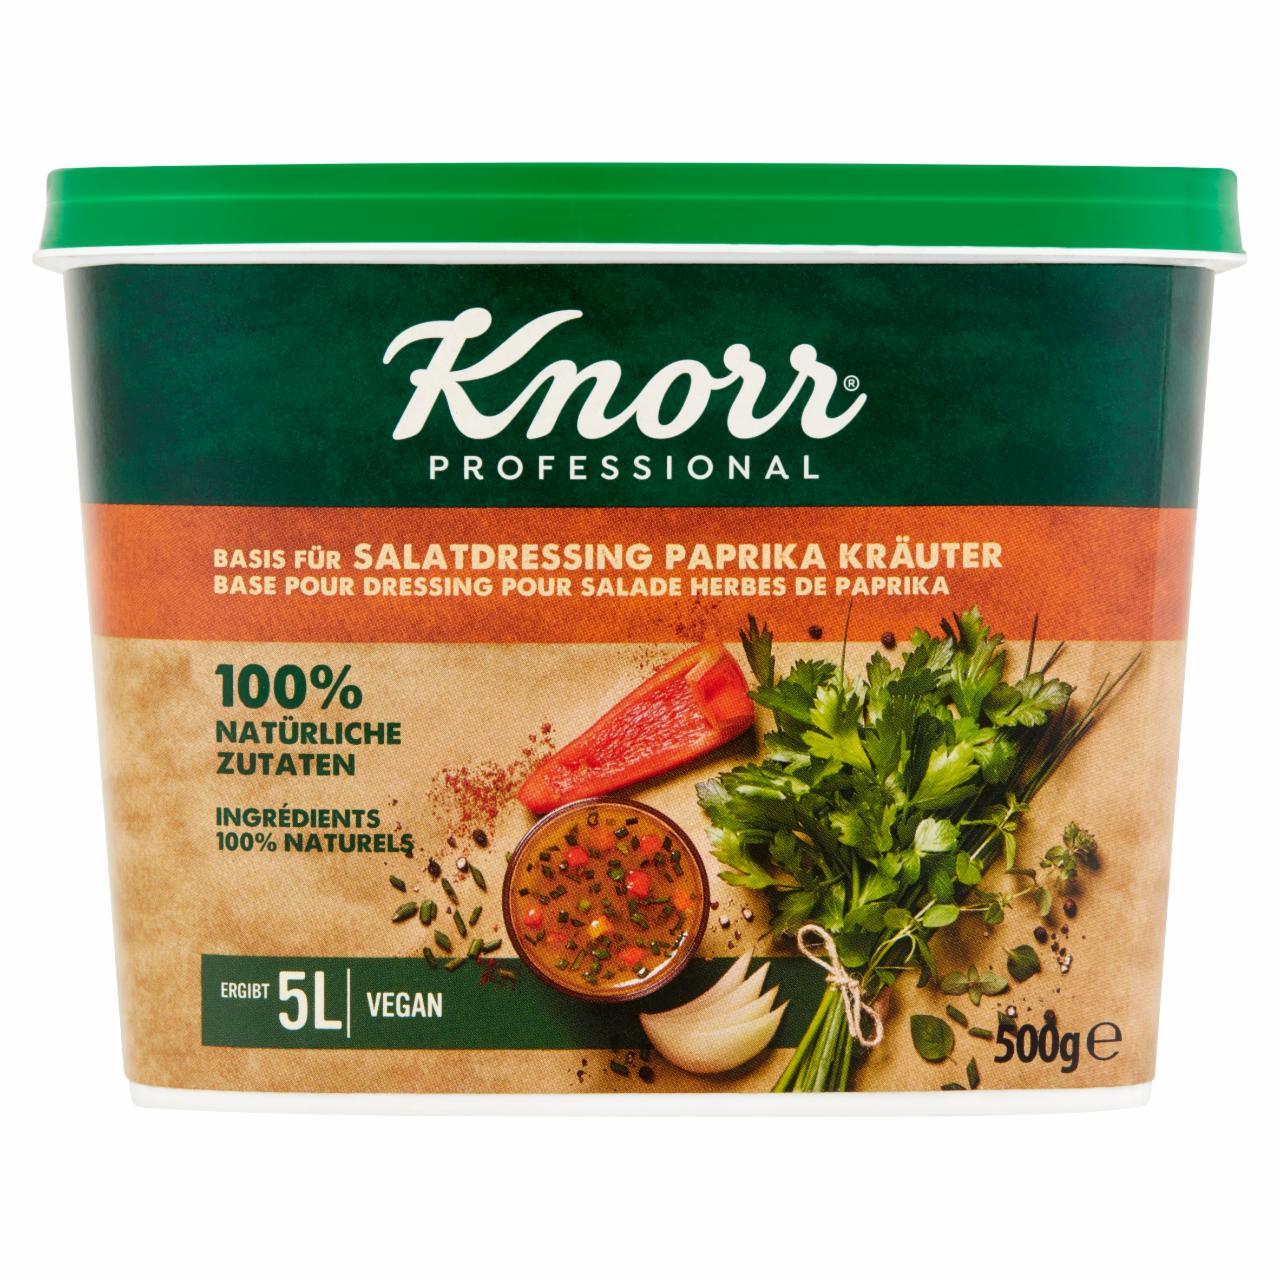 Zdjęcia - Knorr Professional Sos sałatkowy paprykowy 500 g